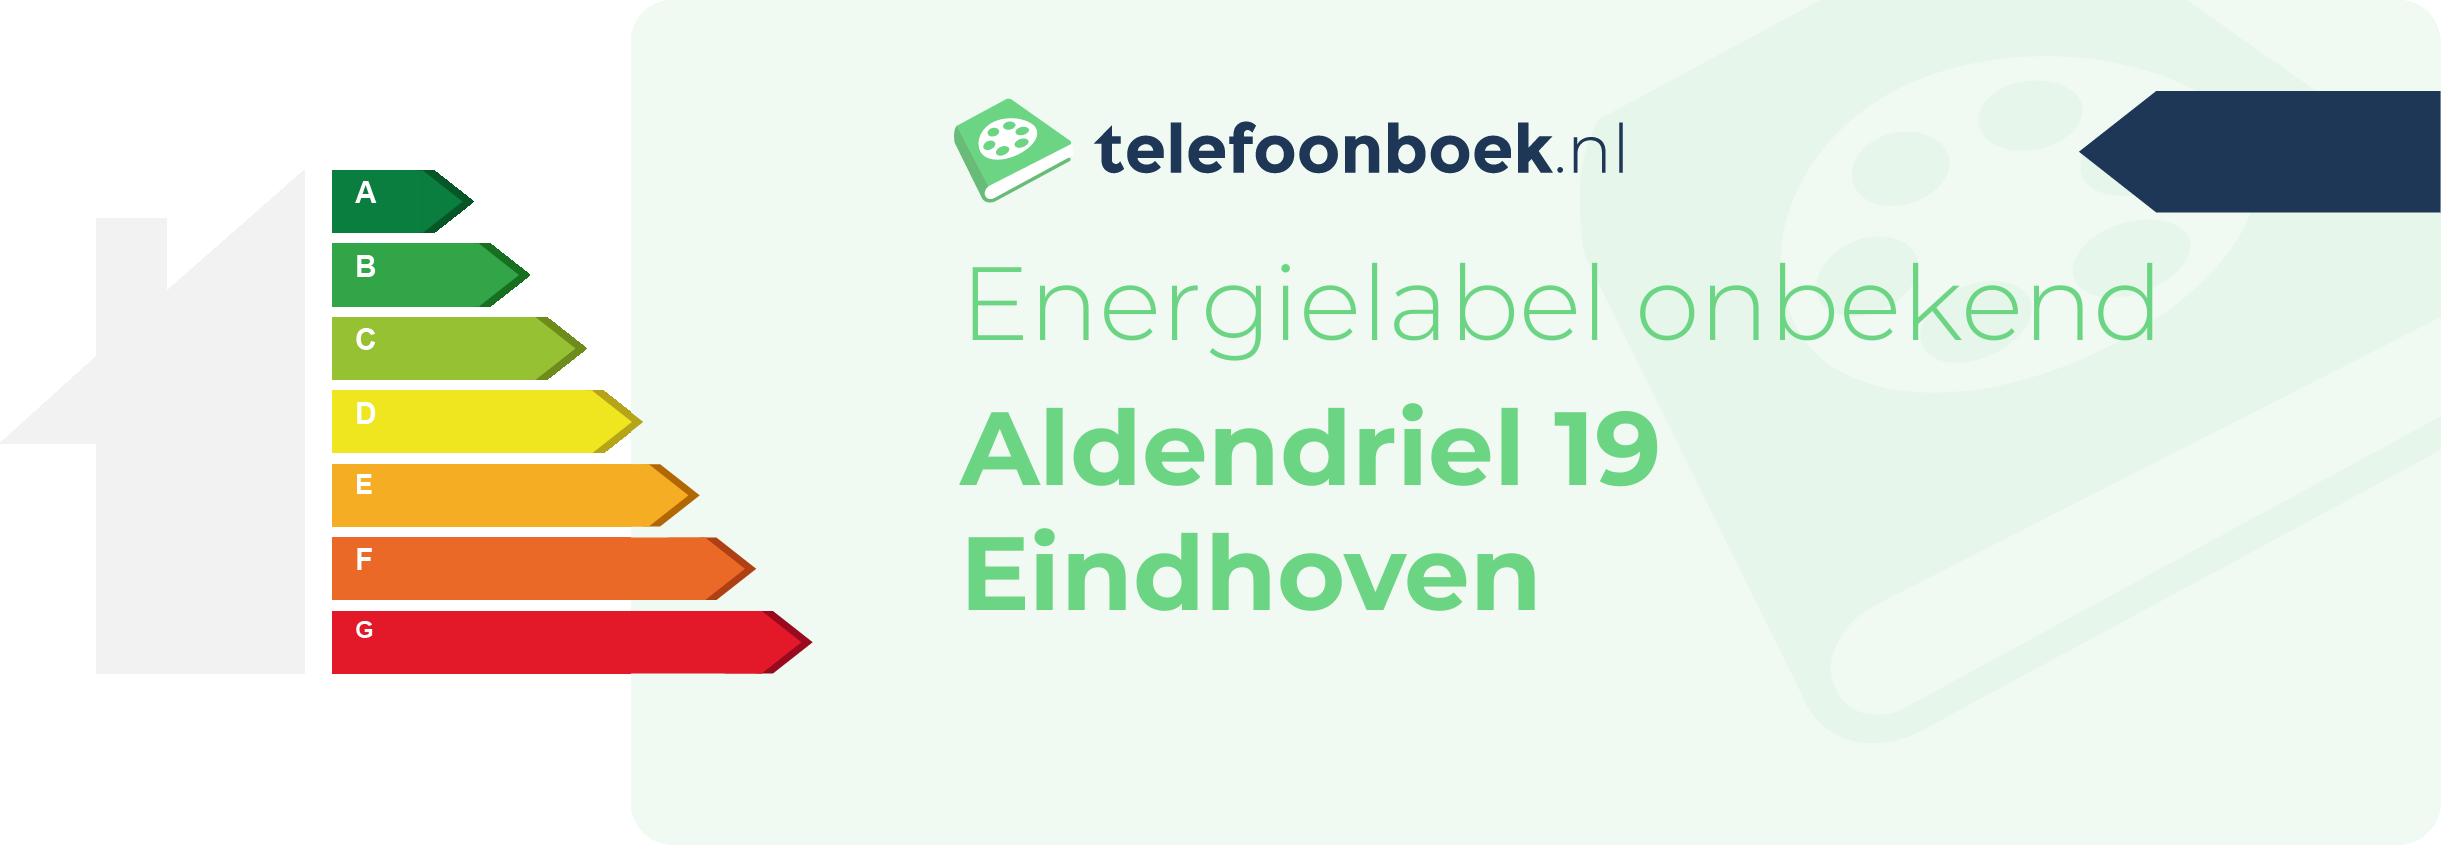 Energielabel Aldendriel 19 Eindhoven